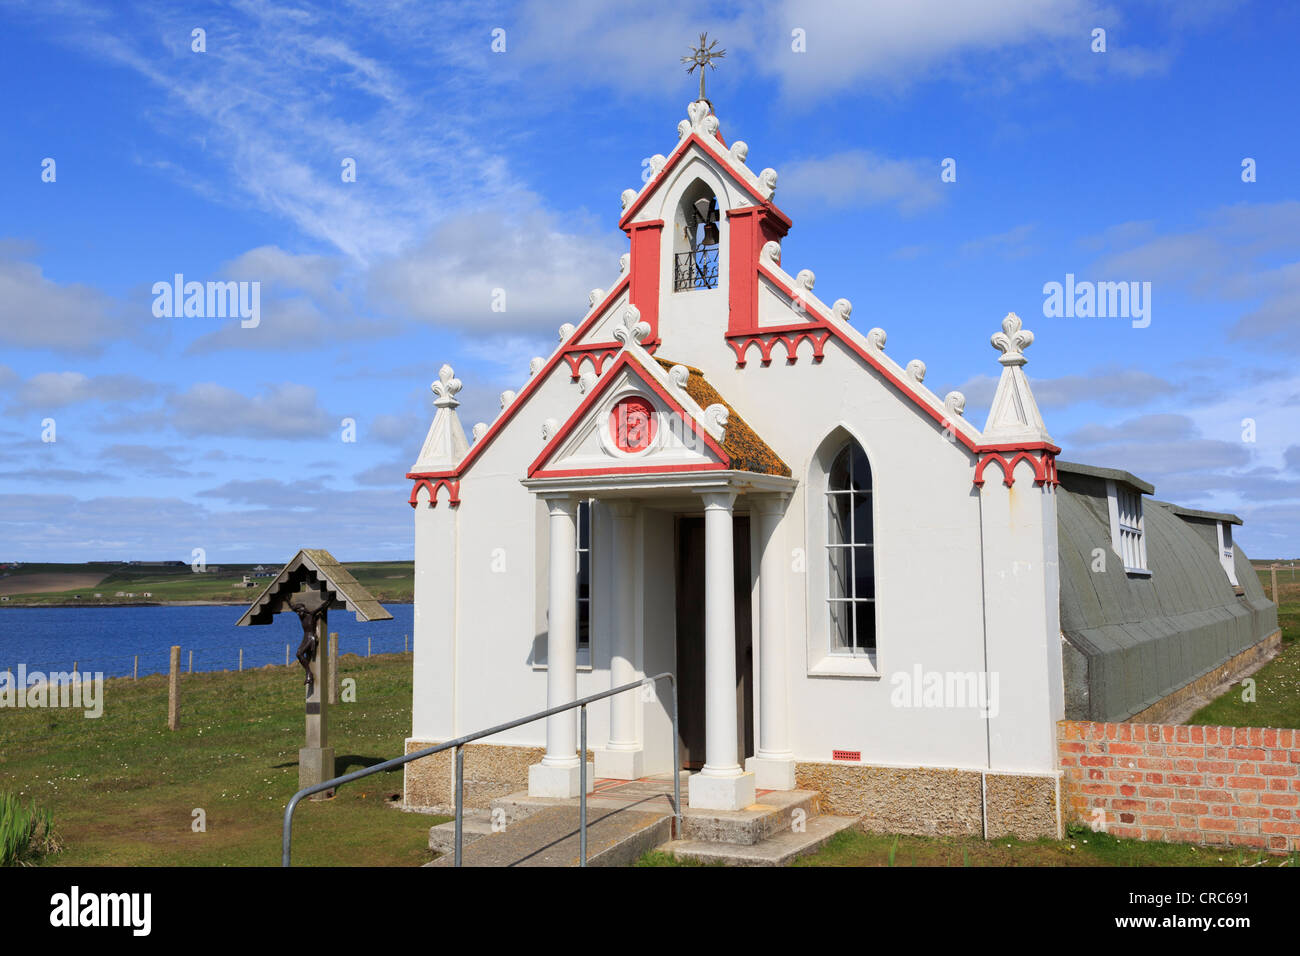 Italienischen Kapelle gebaut aus 2 Nissen Hütten durch italienische Kriegsgefangene des Zweiten Weltkriegs. Lamb Holm, Orkney Inseln, Schottland, Großbritannien, Großbritannien Stockfoto